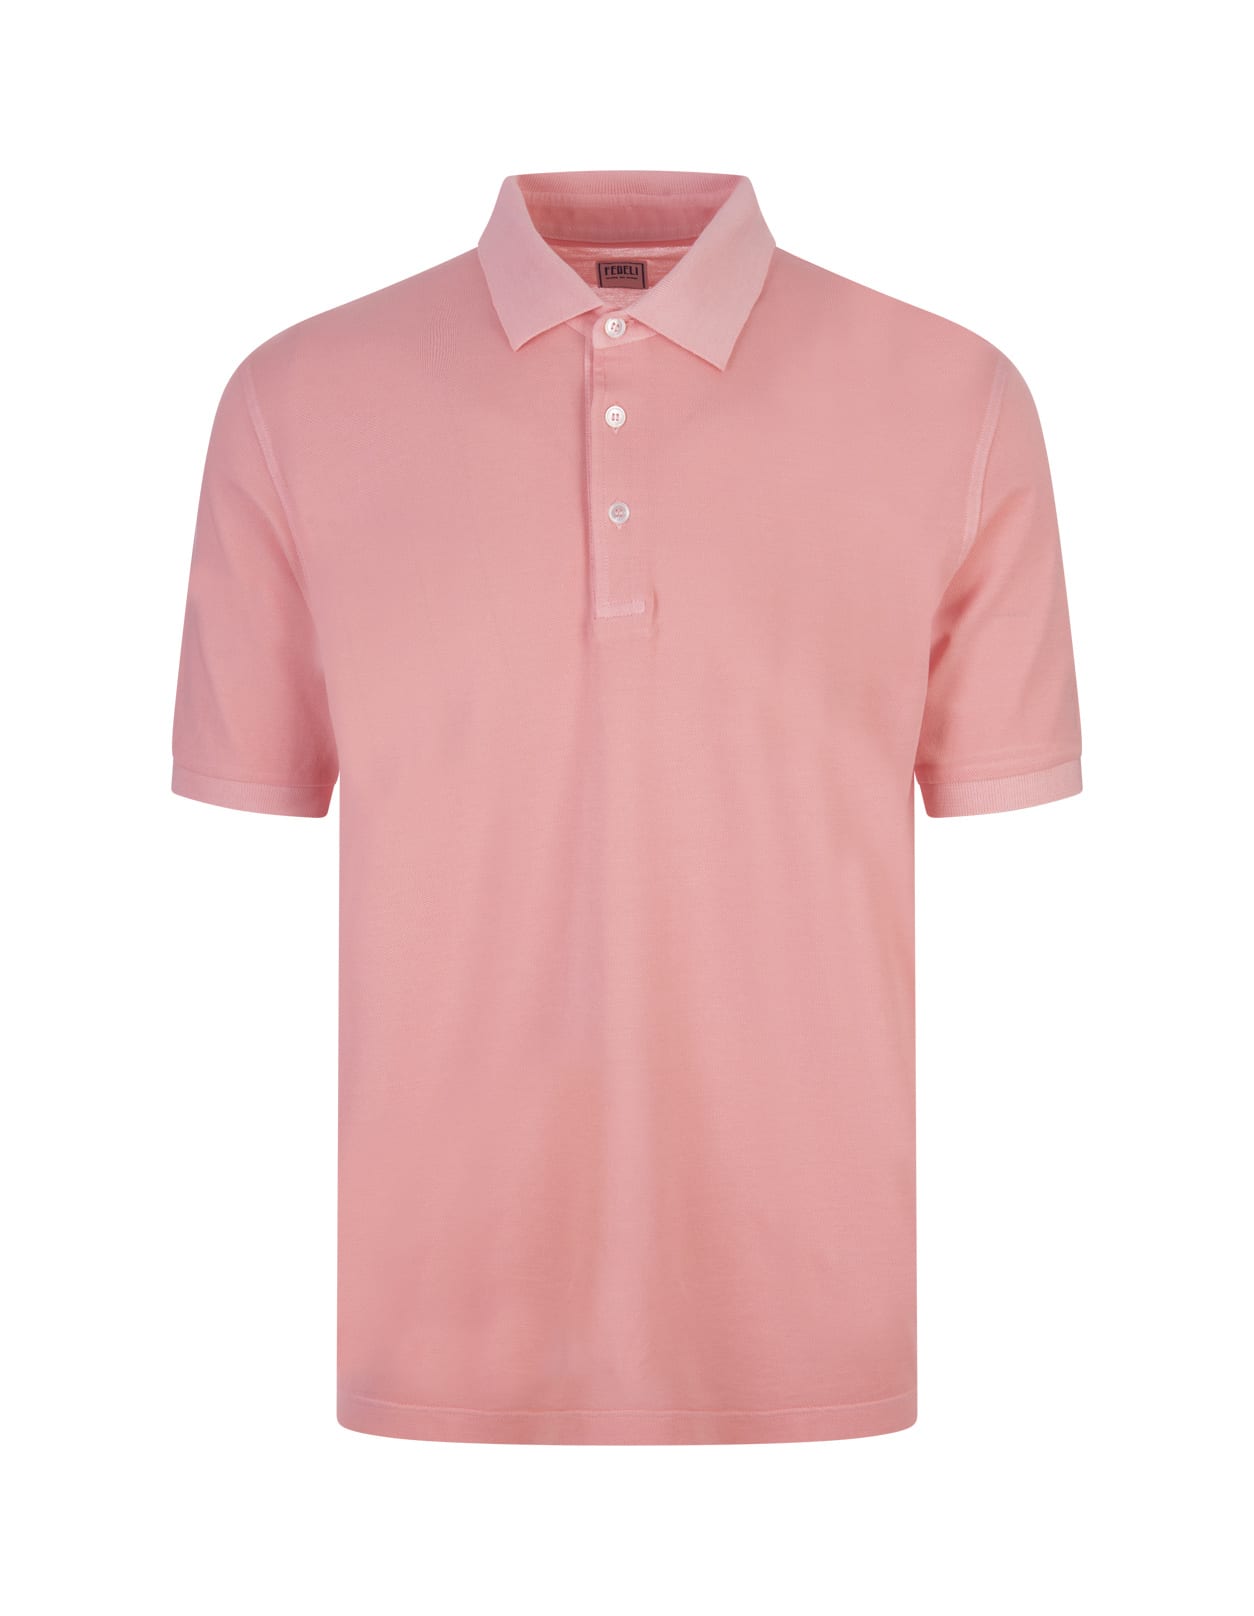 Fedeli Pink Cotton Pique Polo Shirt